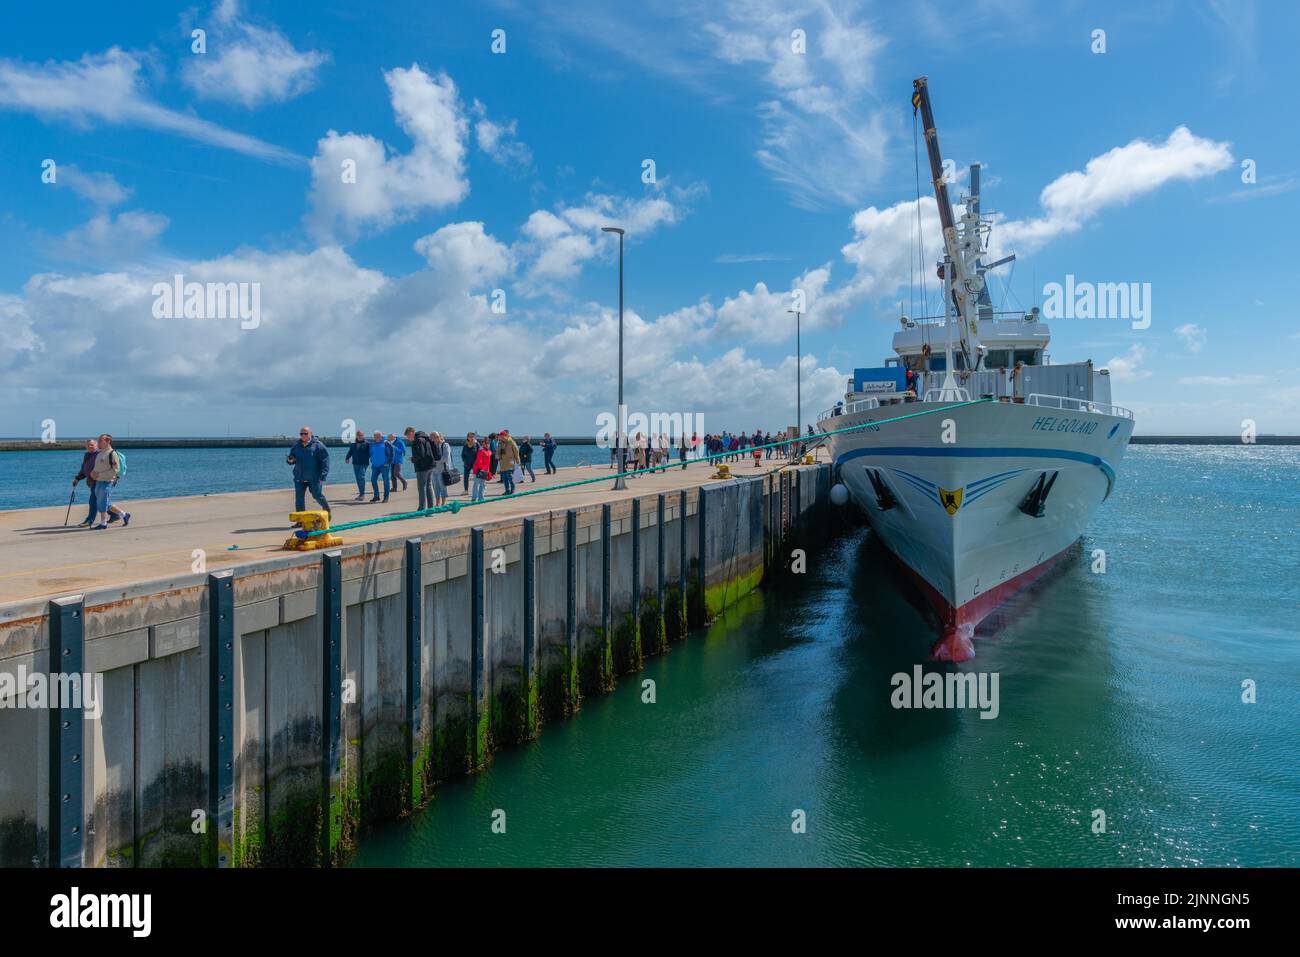 Arrivée d'un bateau d'excursion dans le port extérieur, passagers, quai, Helgoland, Schleswig-Holstein, Allemagne Banque D'Images